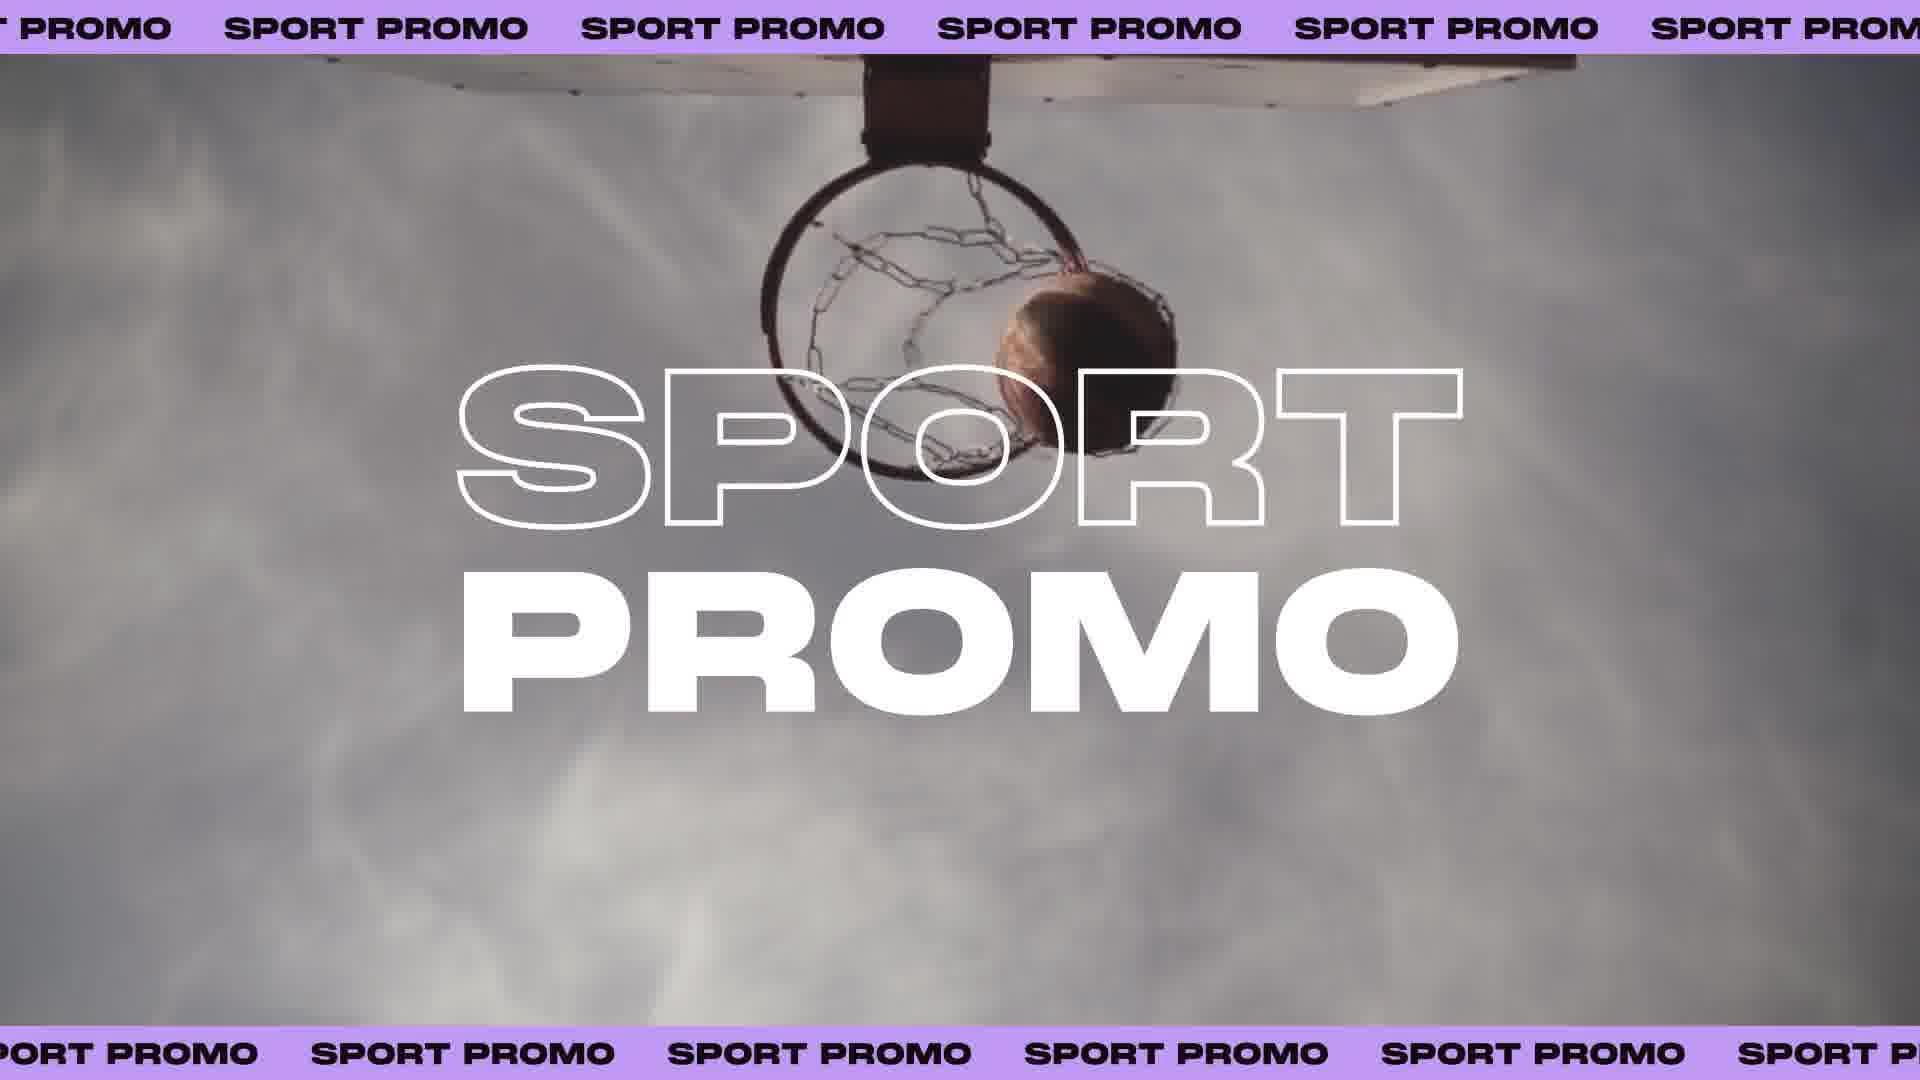 Sports Typographic Promo Videohive 29798820 Premiere Pro Image 13